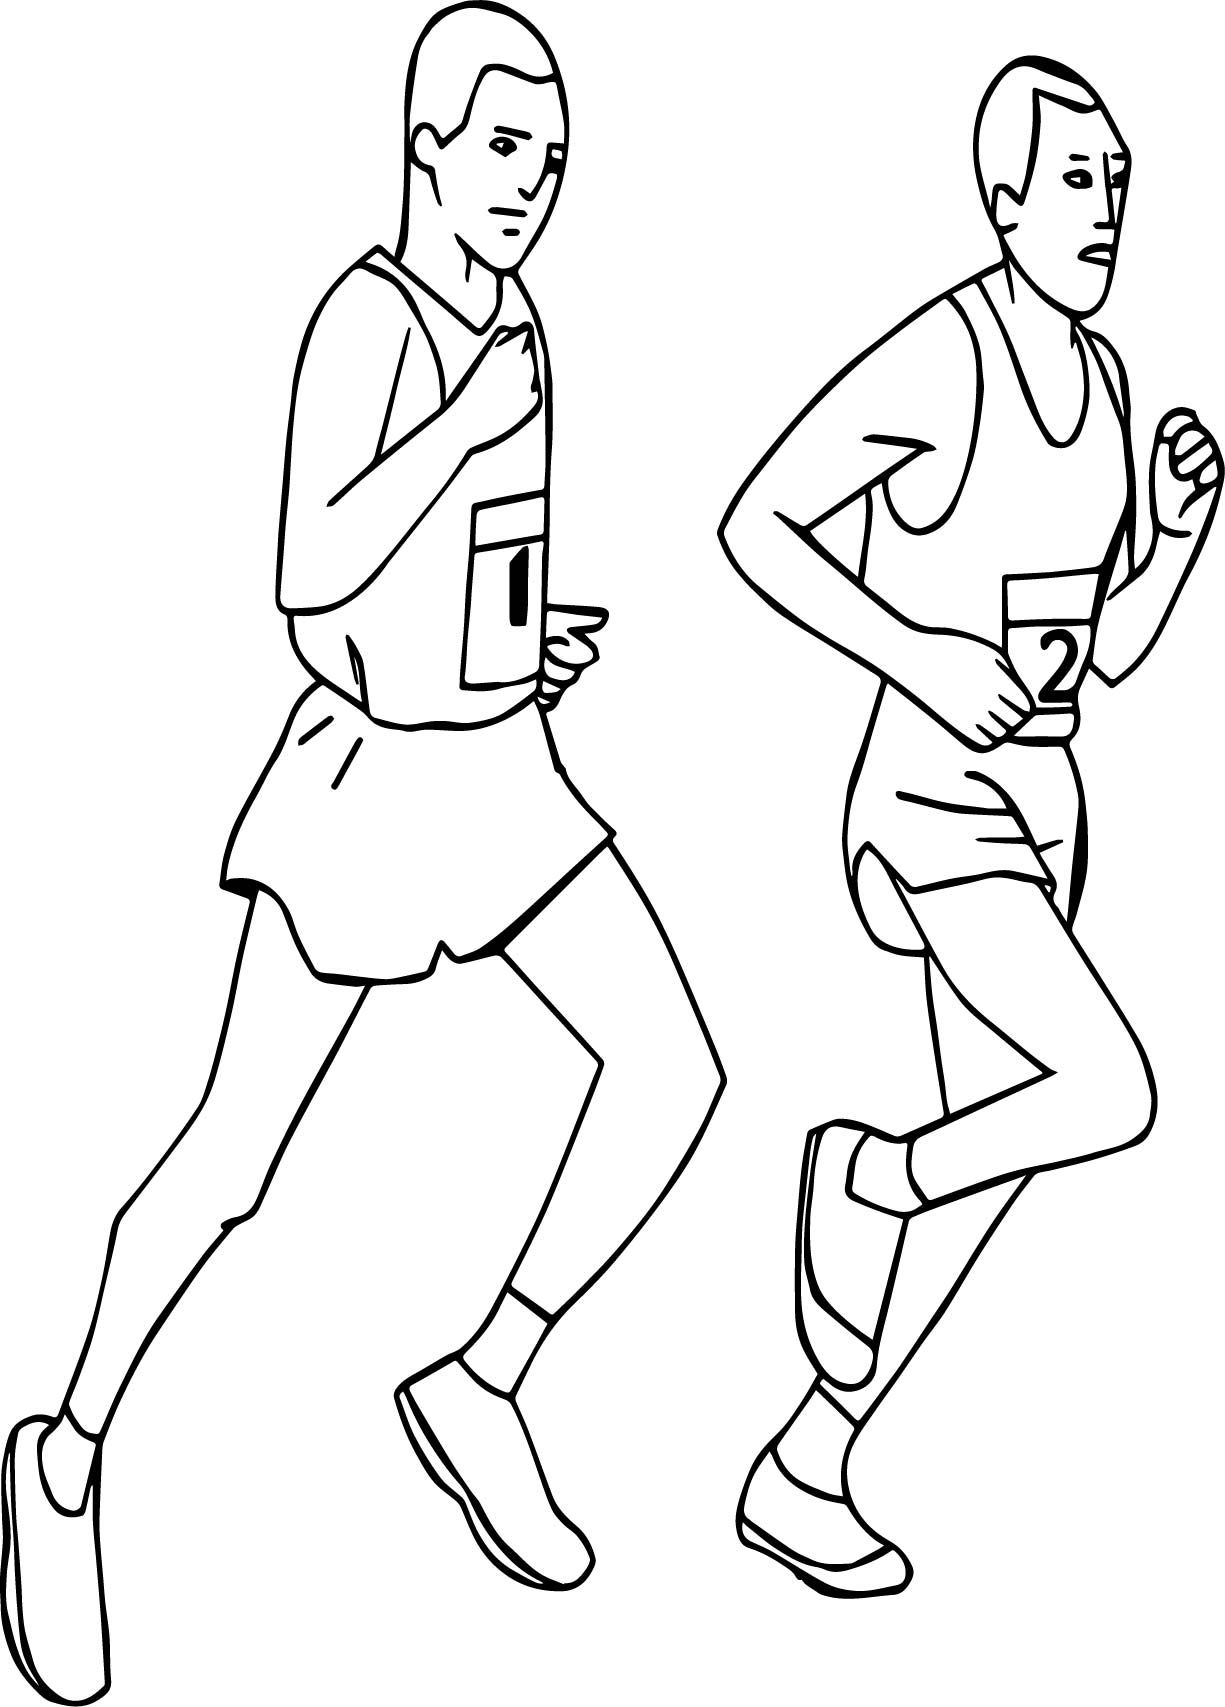 Спортсмен в движении рисунок. Раскраска: спортсмены. Бегущий человек рисунок карандашом. Бег раскраска. Раскраски спортсмены в движении.